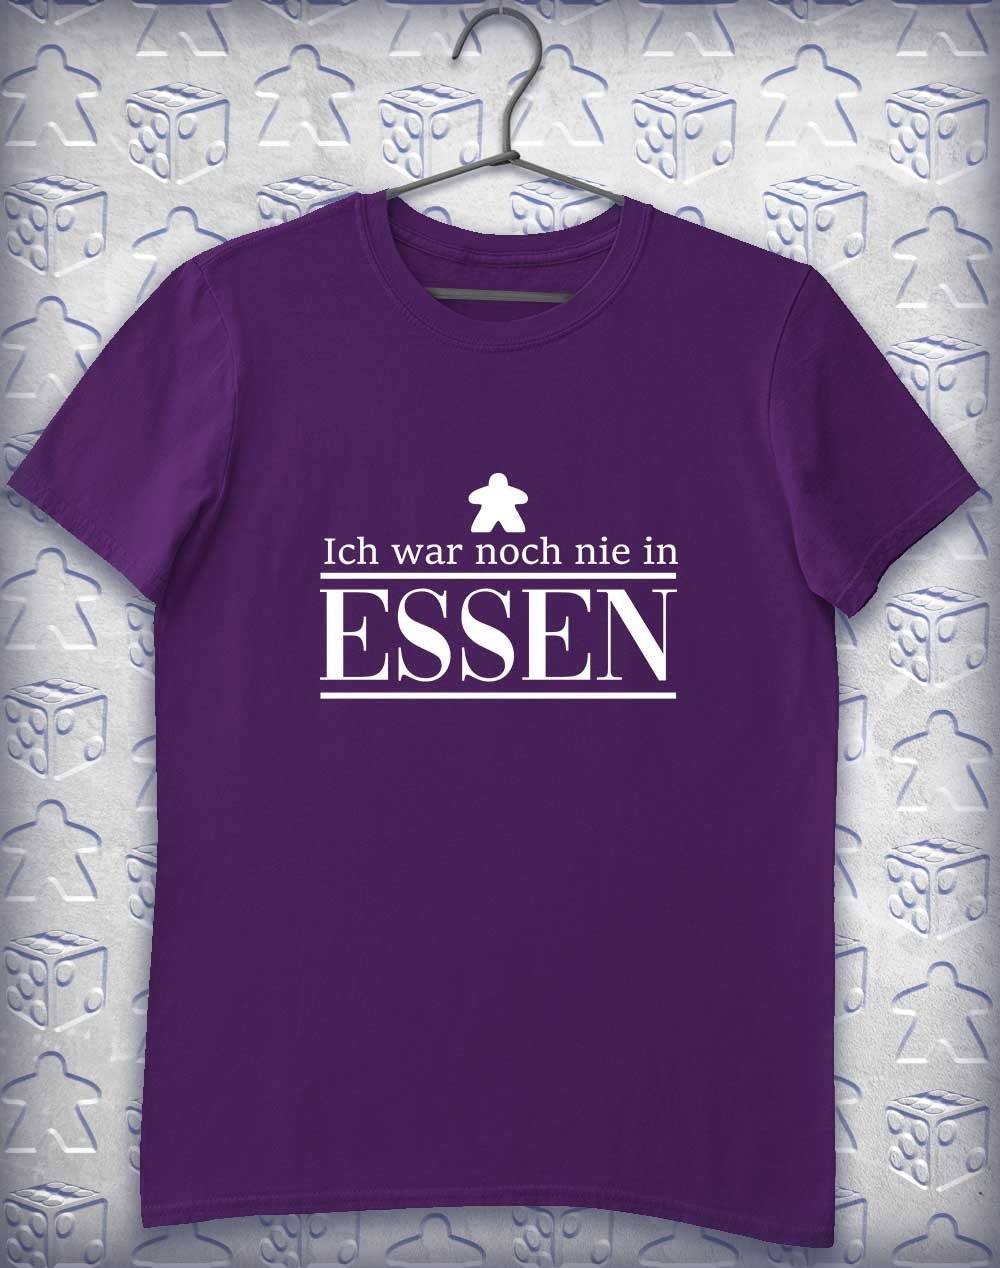 Never Been to Essen Alphagamer T-Shirt S / Purple  - Off World Tees